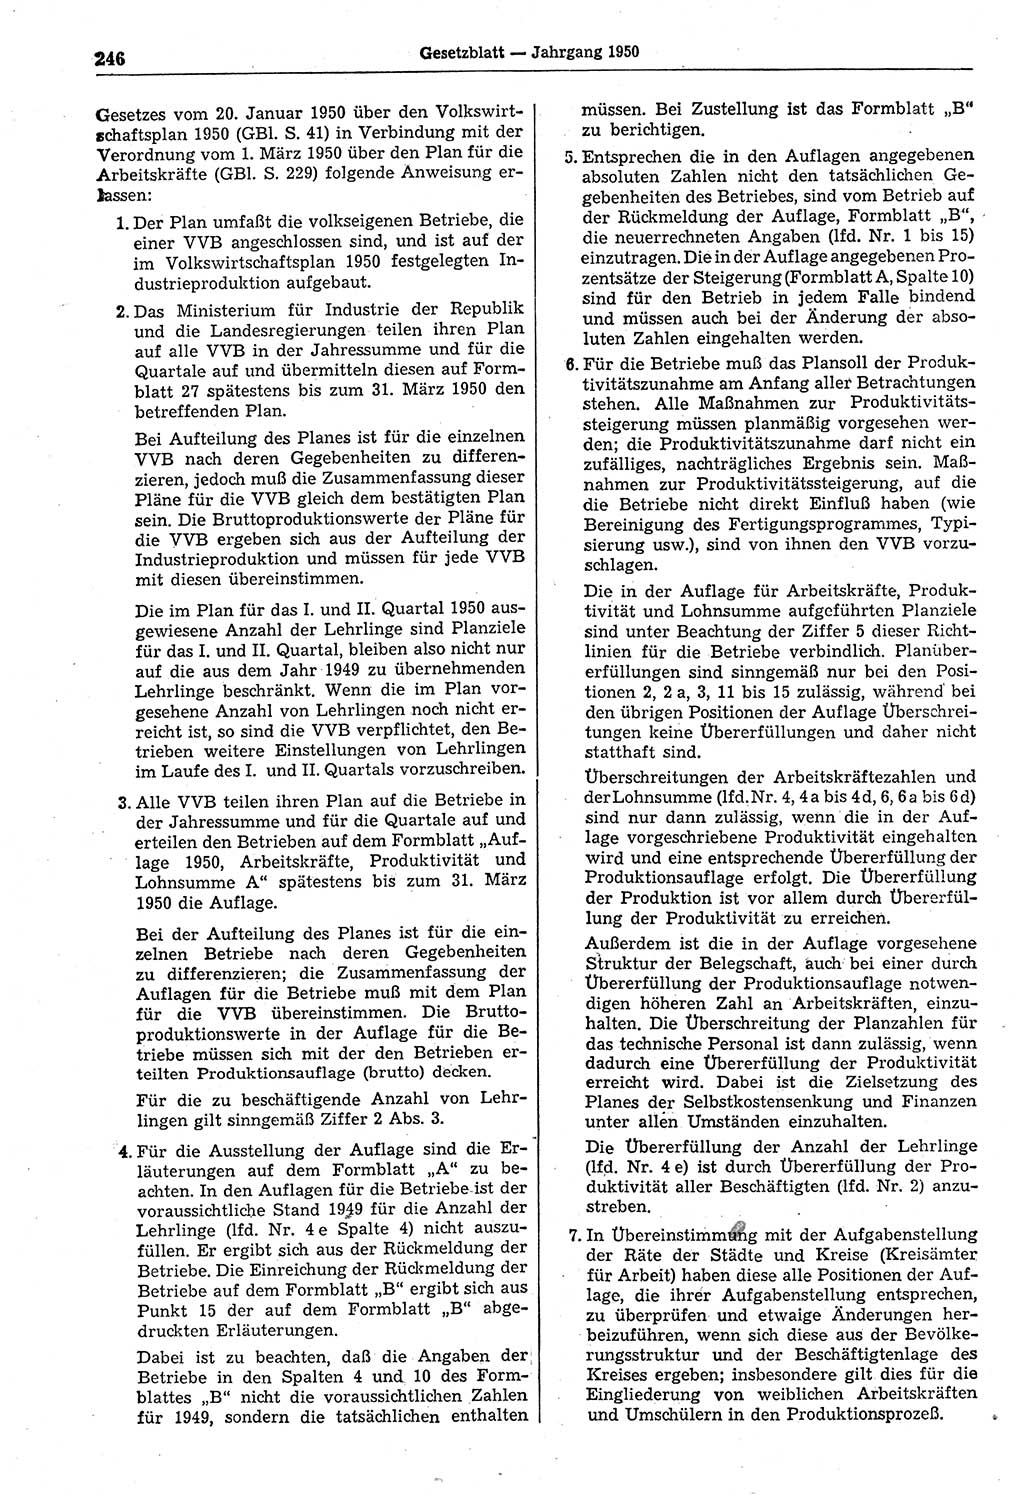 Gesetzblatt (GBl.) der Deutschen Demokratischen Republik (DDR) 1950, Seite 246 (GBl. DDR 1950, S. 246)